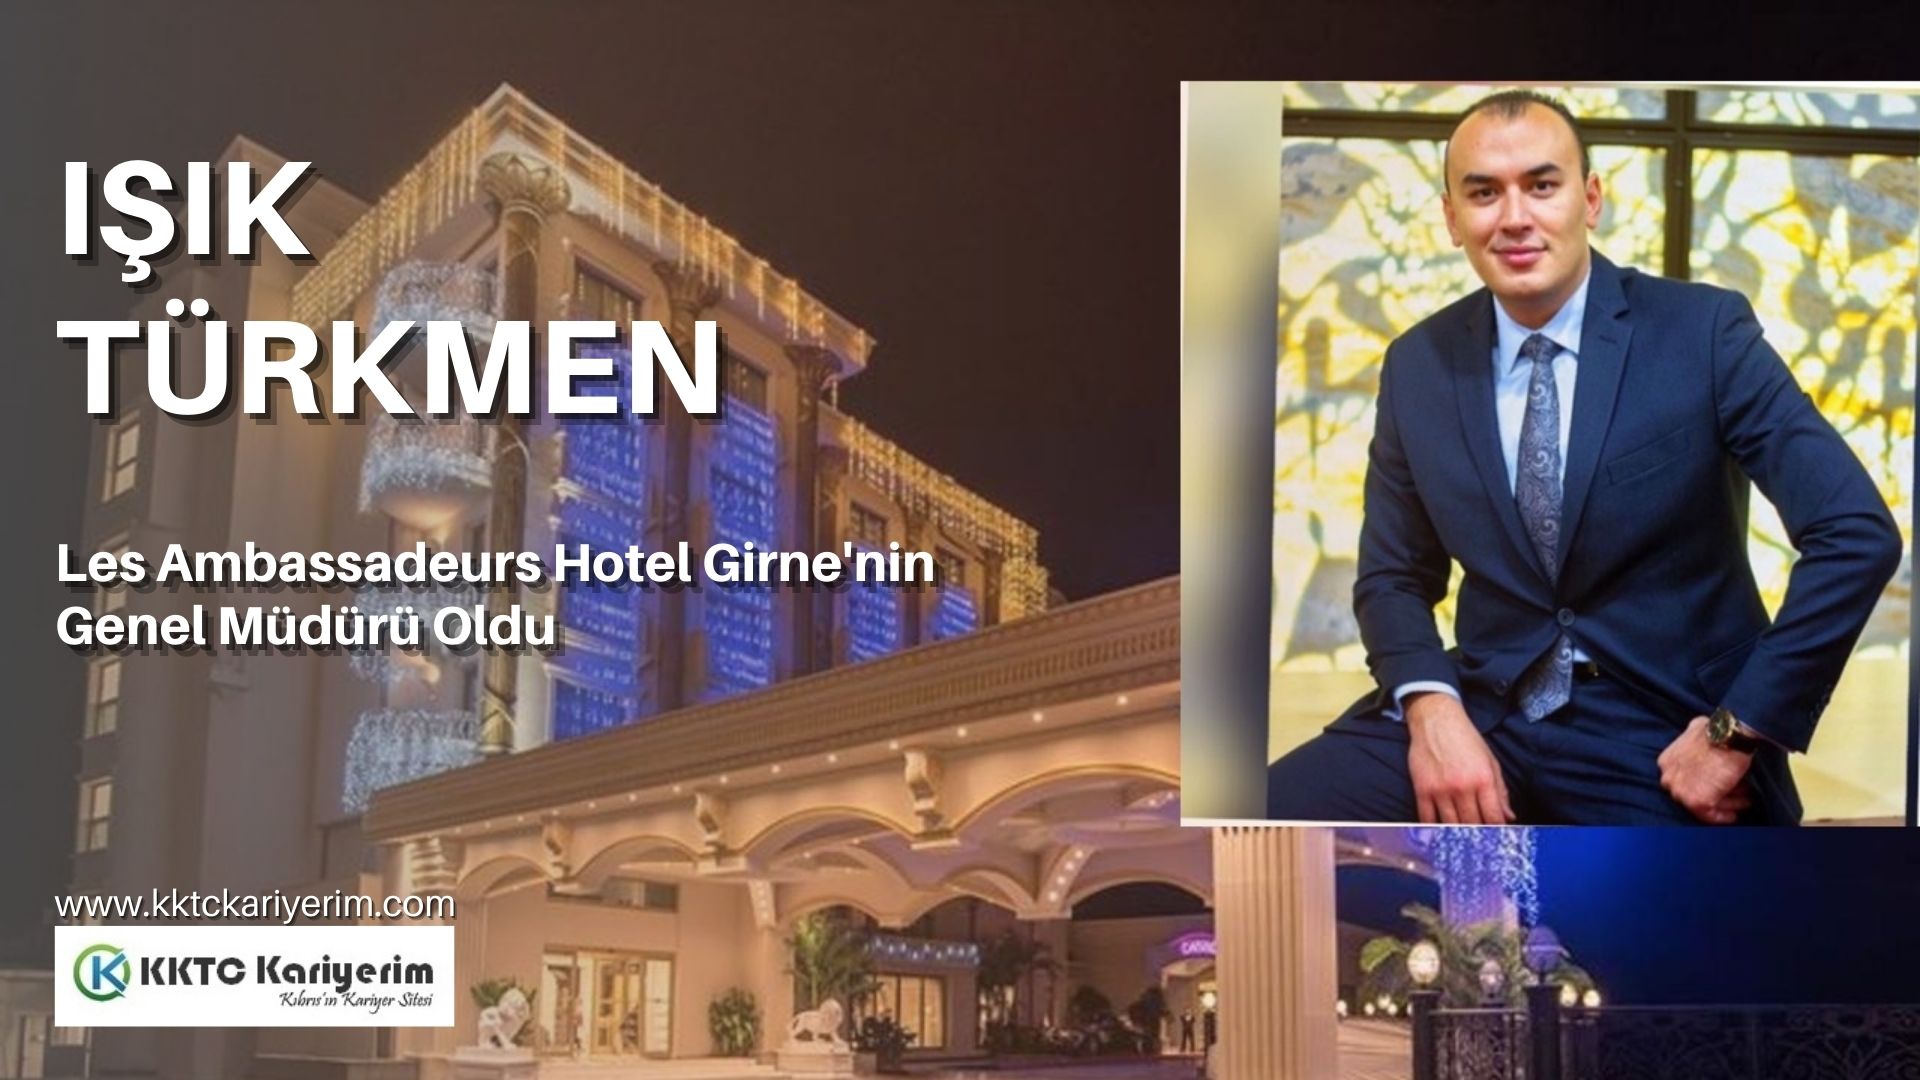 Les Ambassadeurs Hotel Girne’nin Genel Müdürü Işık Türkmen Oldu